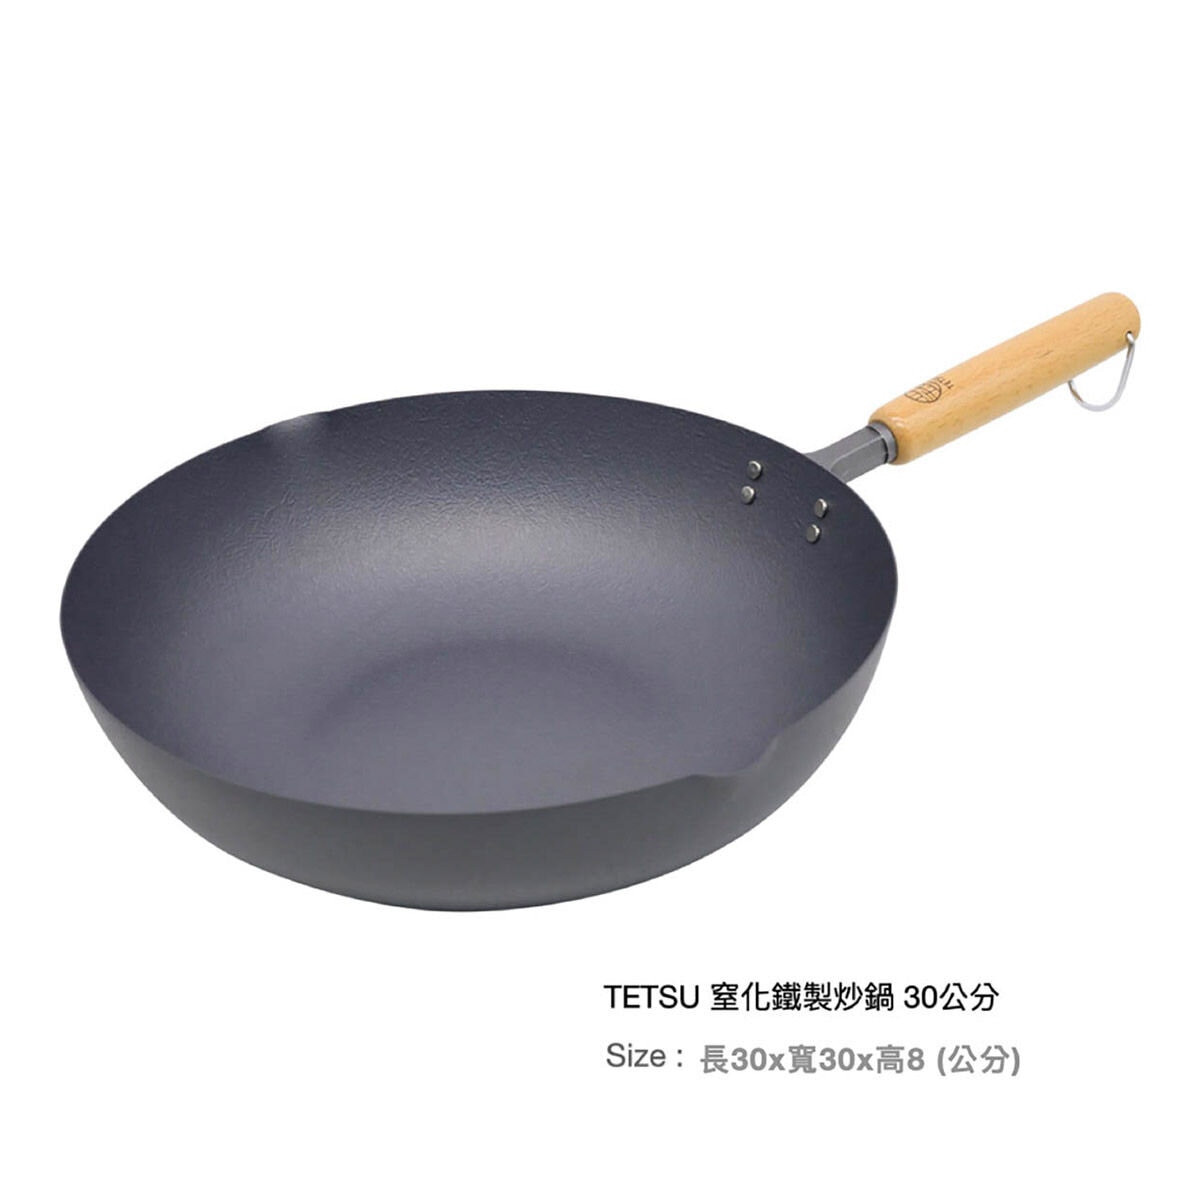 TETSU 窒化鐵製炒鍋 30公分